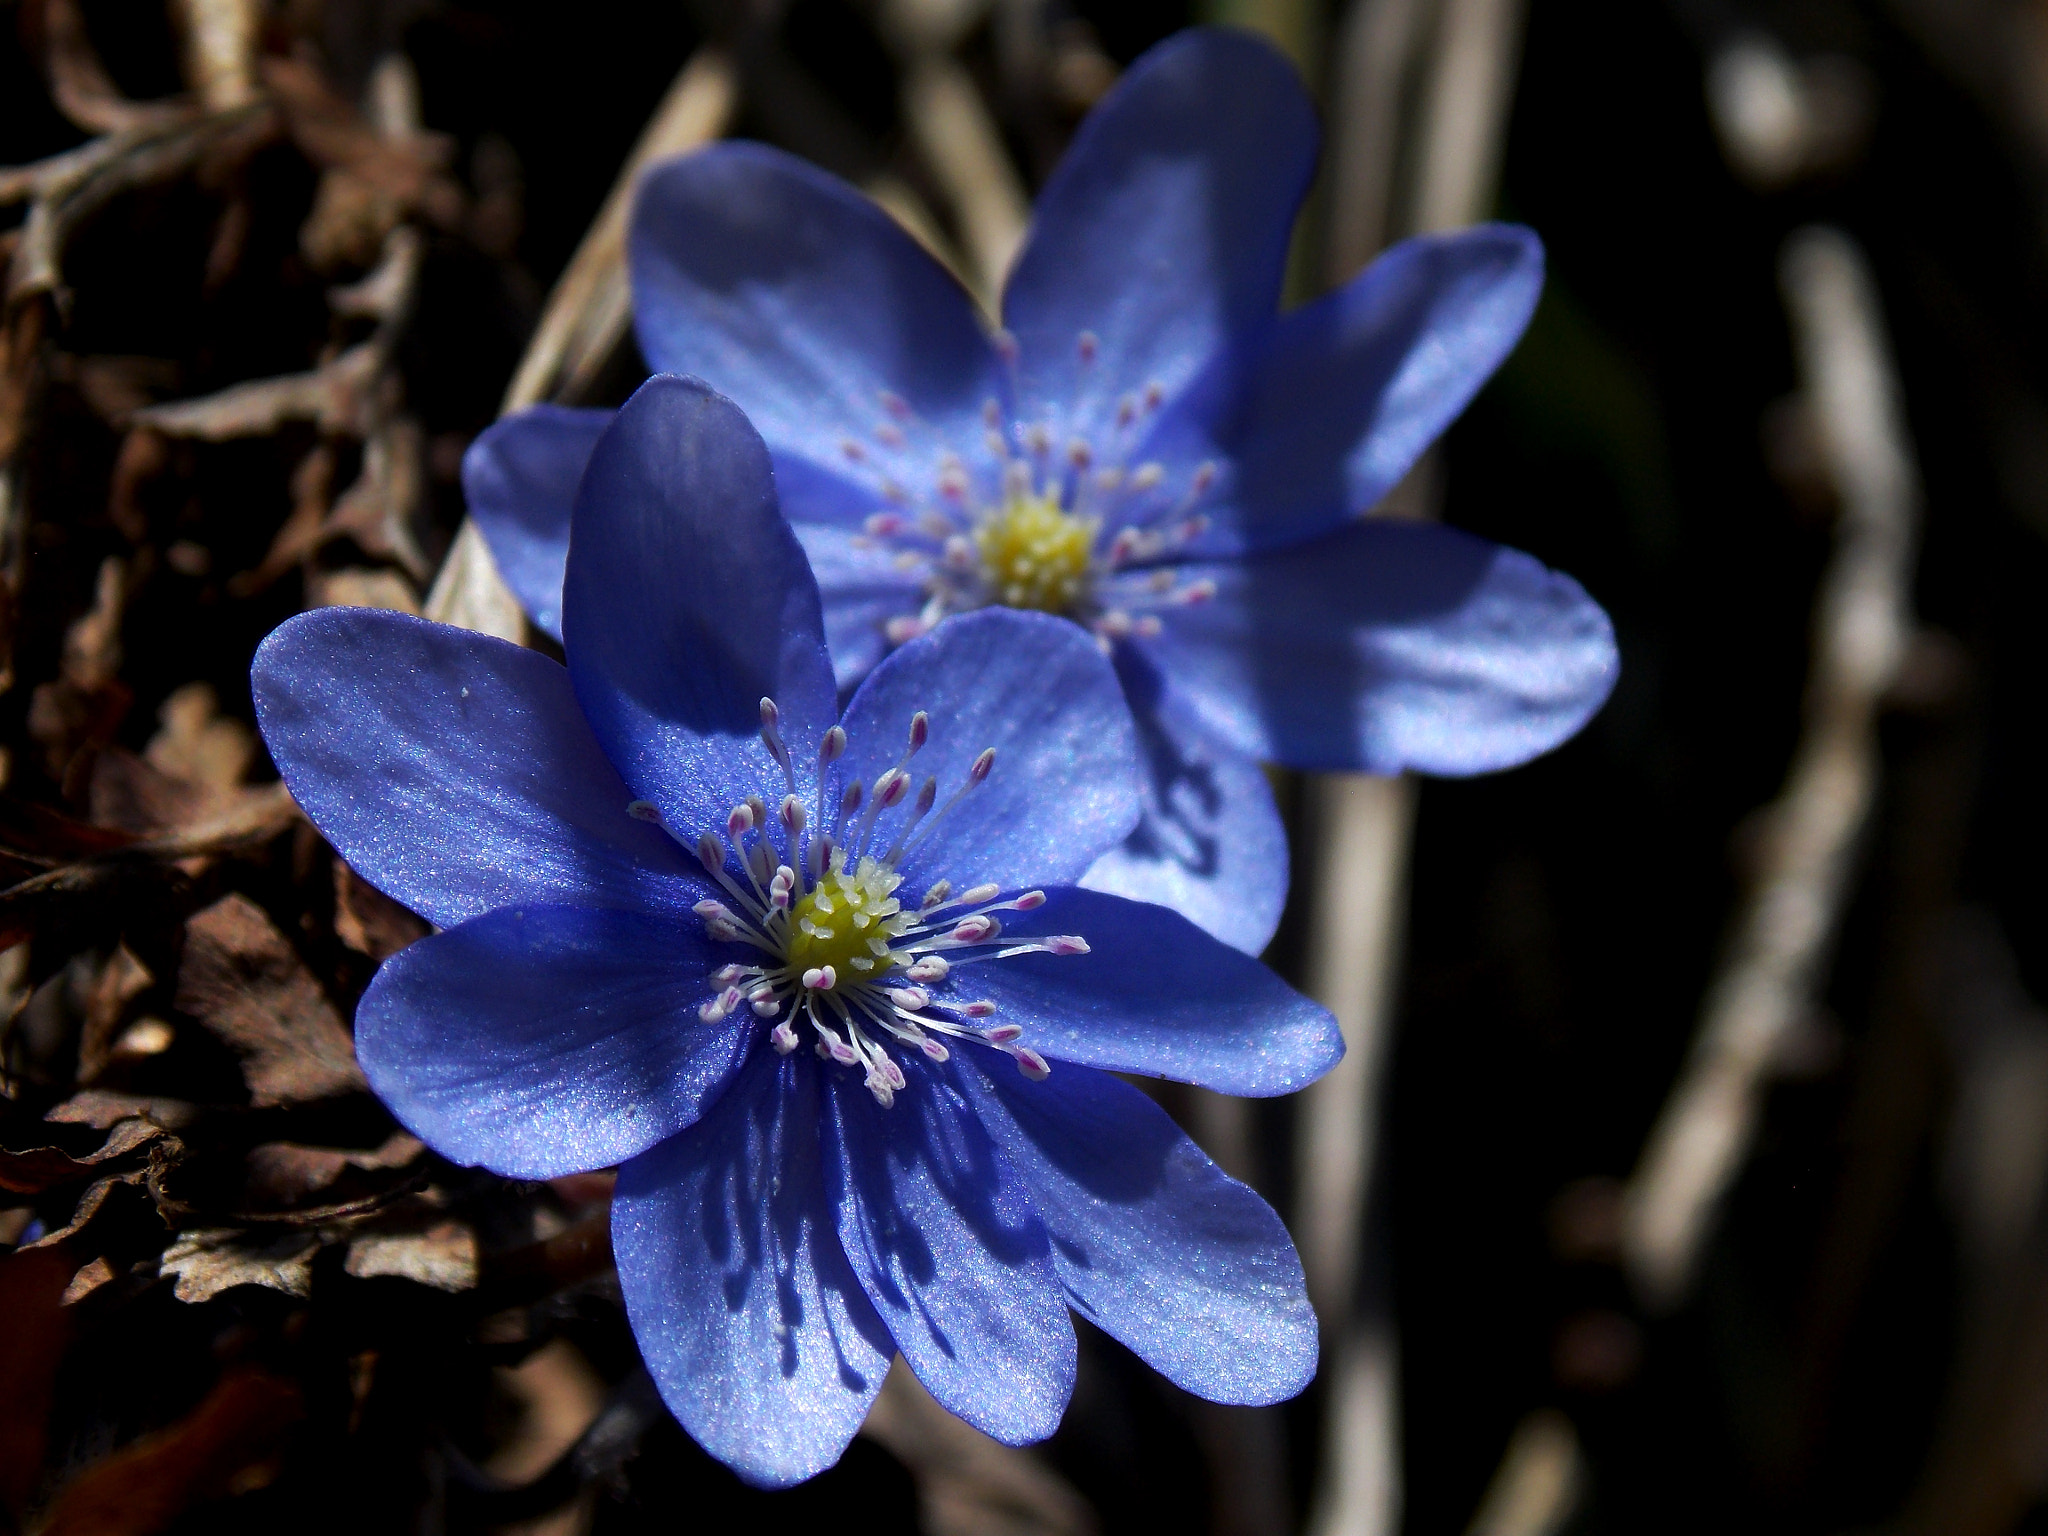 Nikon COOLPIX L320 sample photo. Hepatice nobilis - blue flowers photography